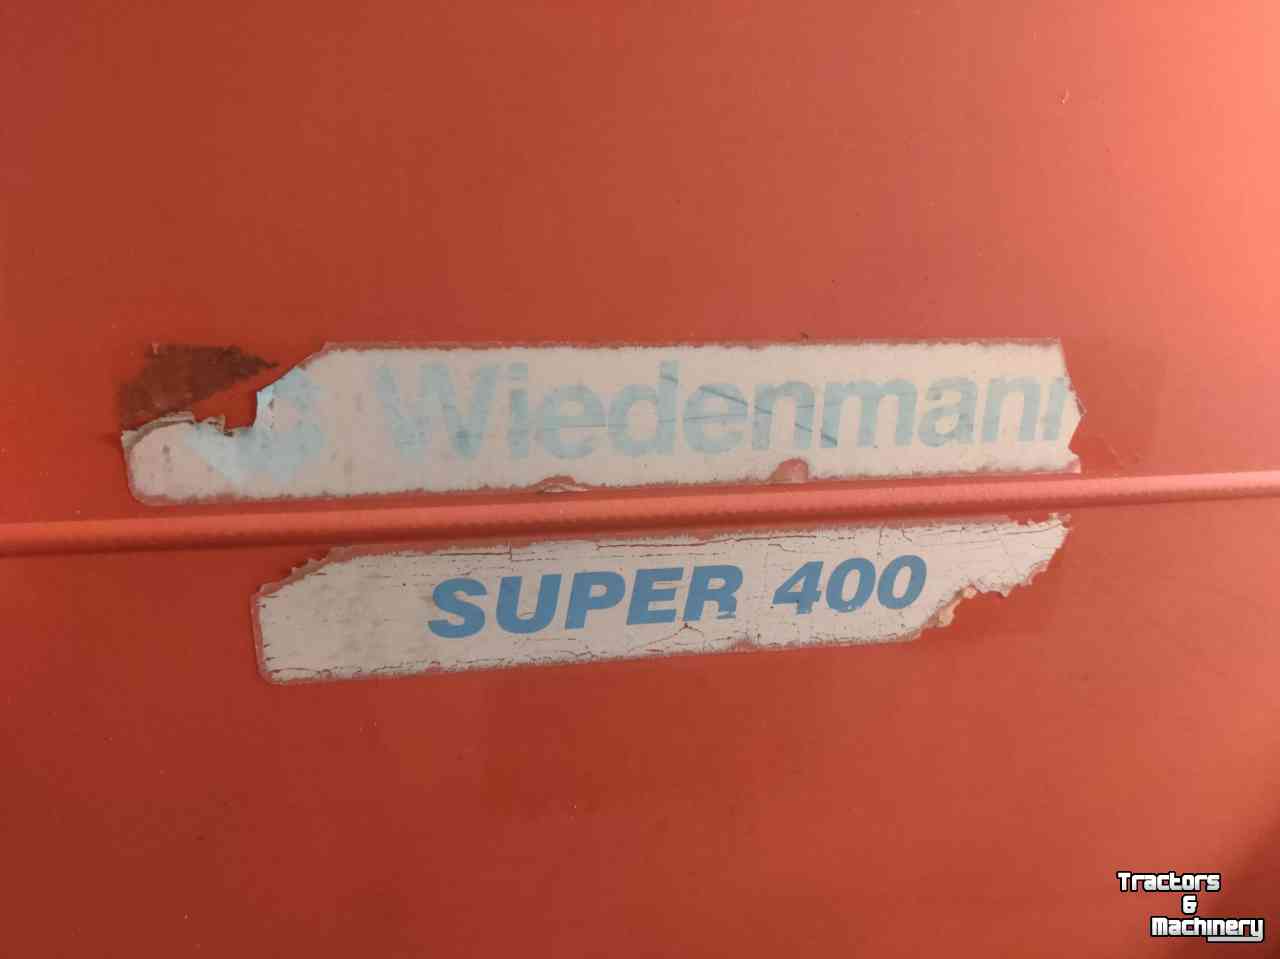 Mower-vacuum combination Wiedenmann Super 400